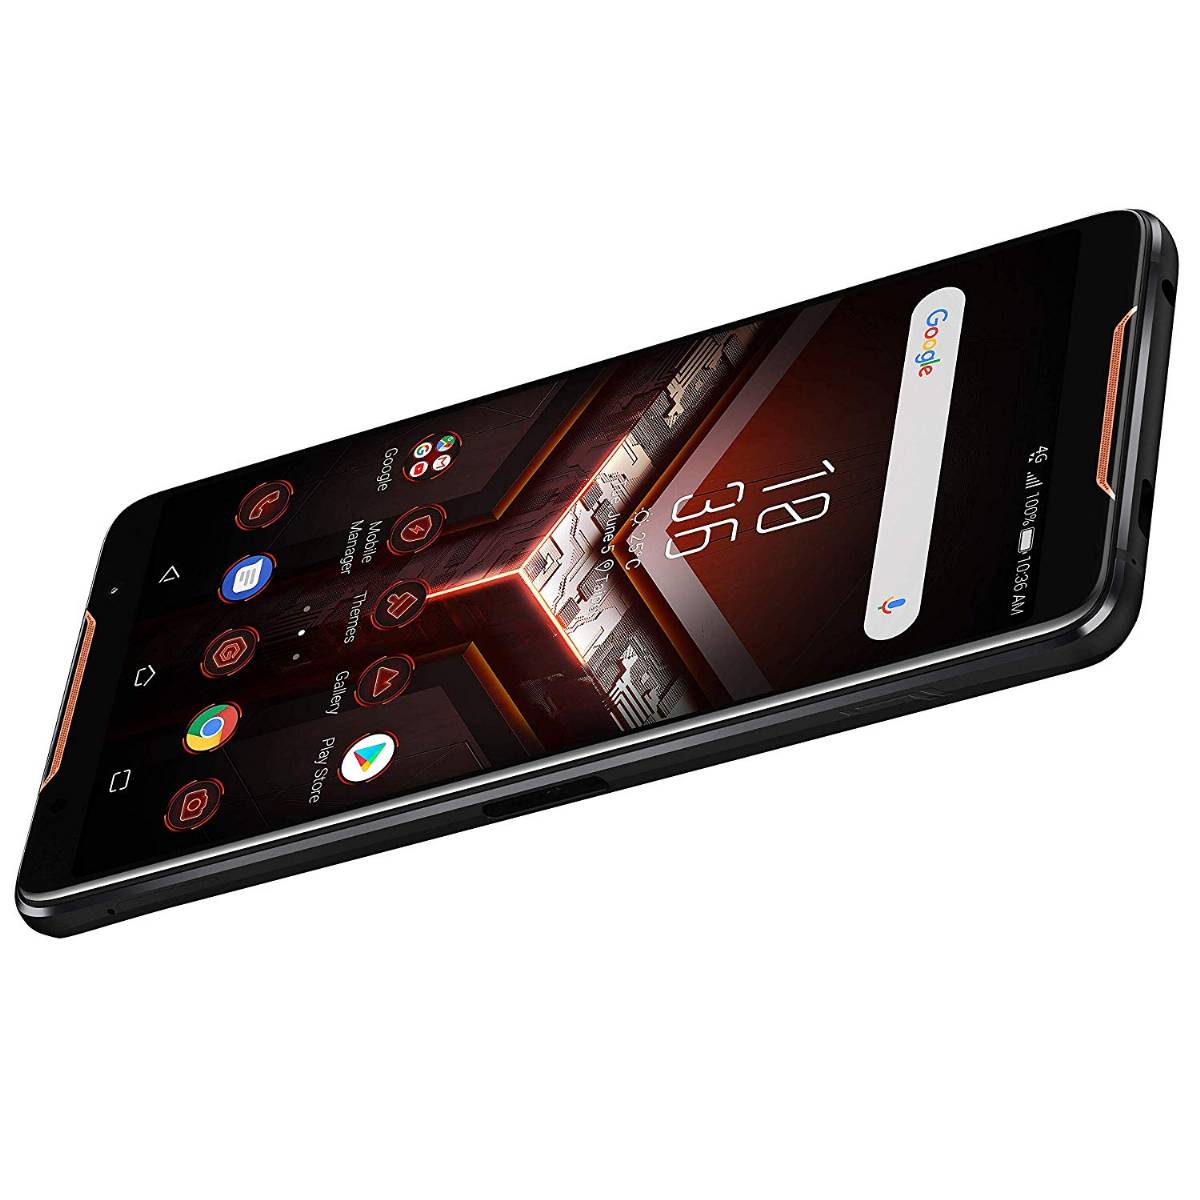 Asus ROG Phone: Smartphone da Gaming – Recensione